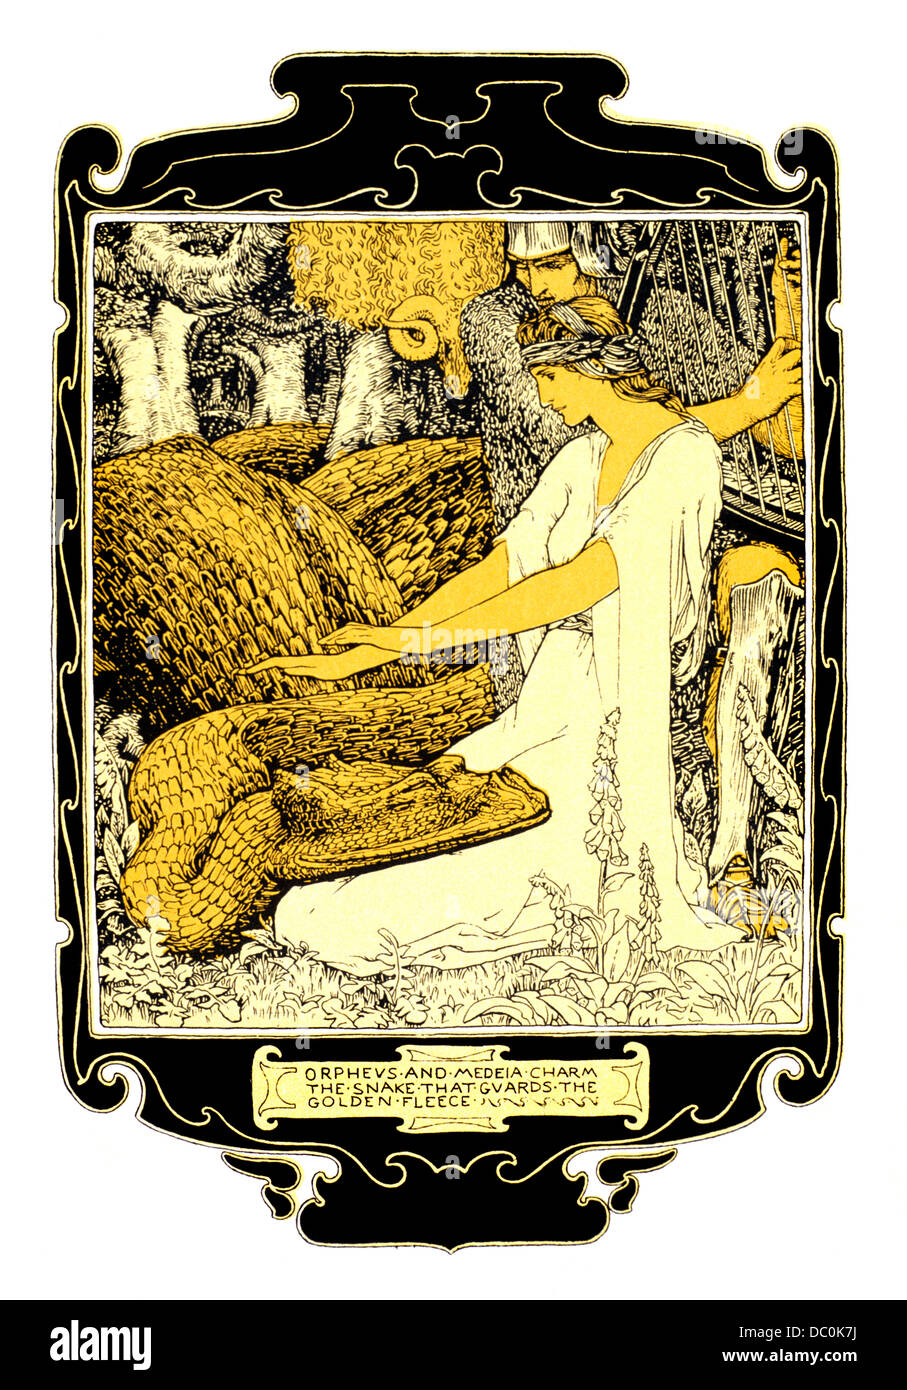 Illustrazione ART NOUVEAU E ORPHEUS MEDEA fascino il serpente che custodisce il vello d'oro della mitologia greca Foto Stock